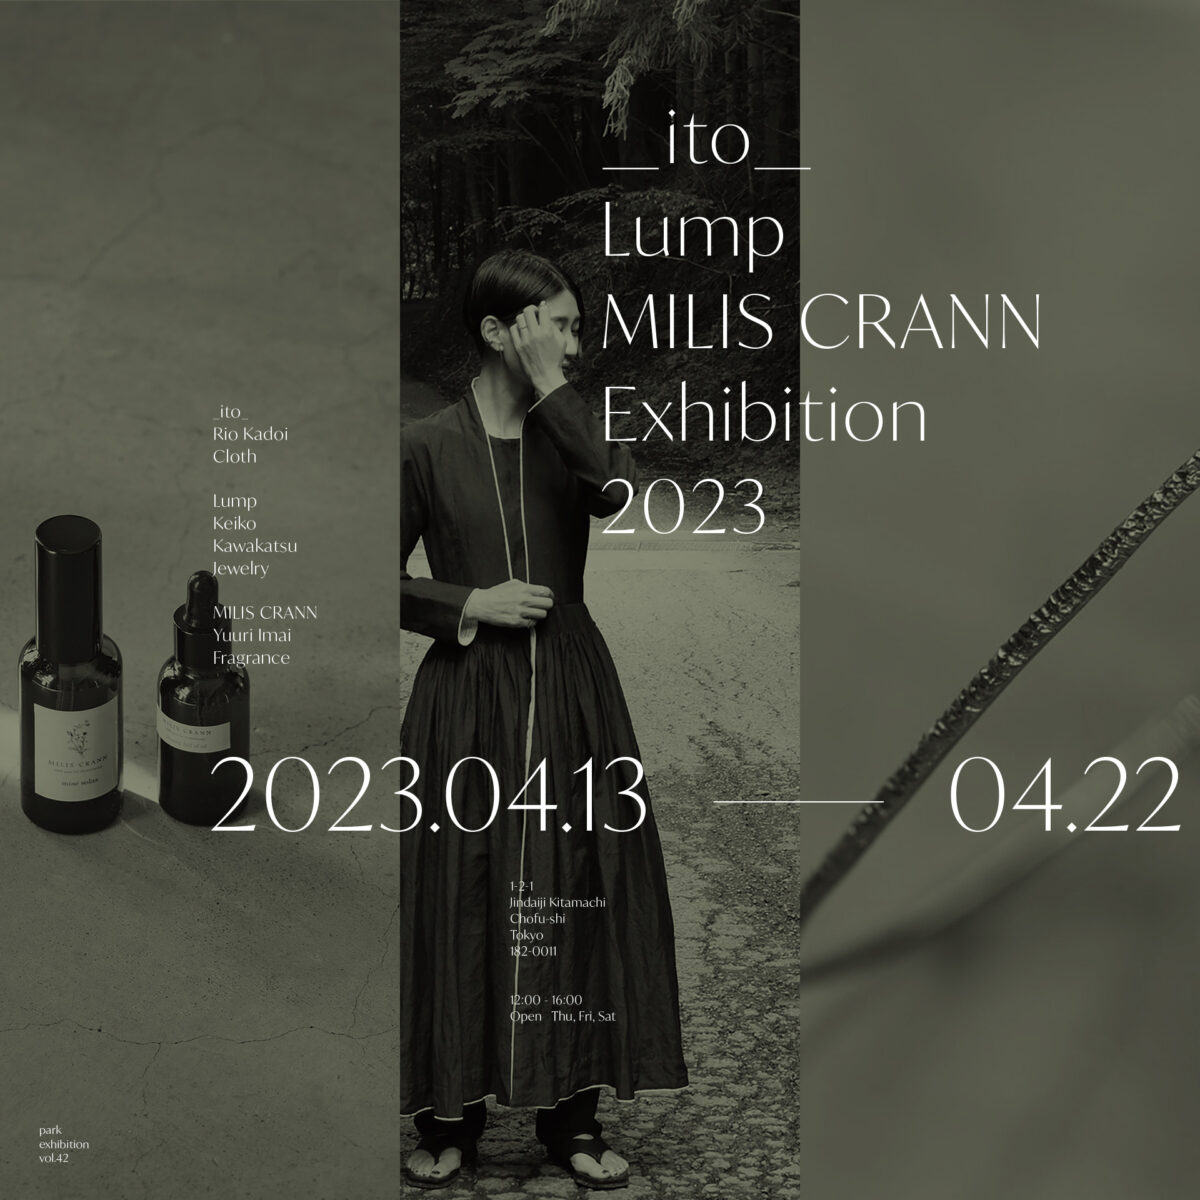 【_ito_, Lump, MILIS CRANN Exhibition 2023】開催のお知らせ